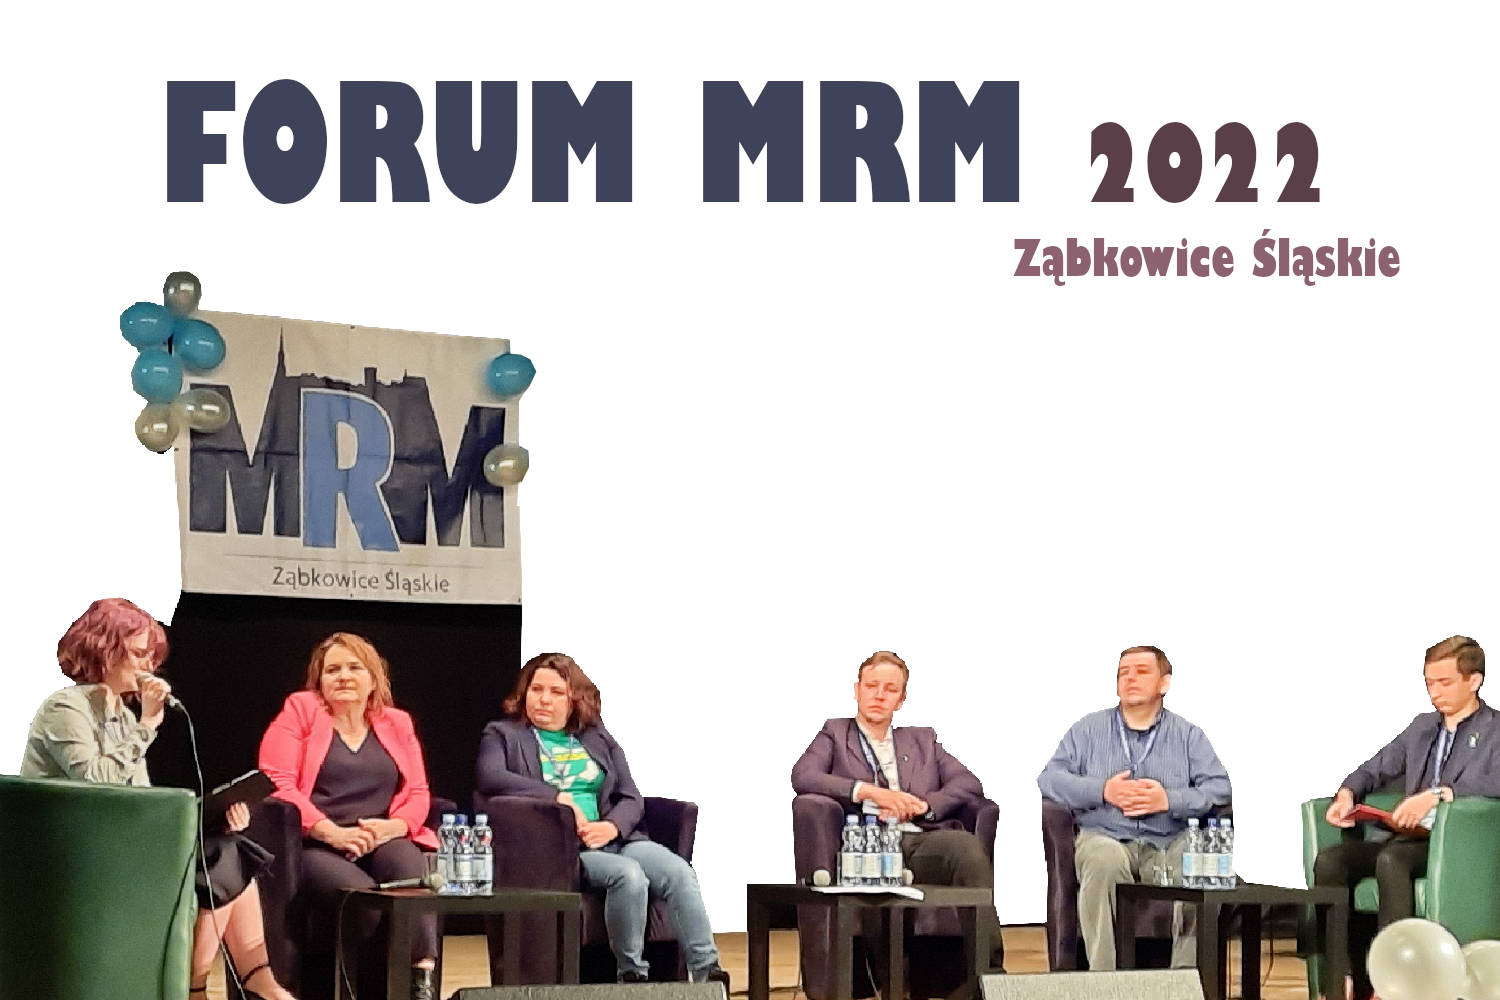 Forum MRM Ząbkowice Śląskie 2022